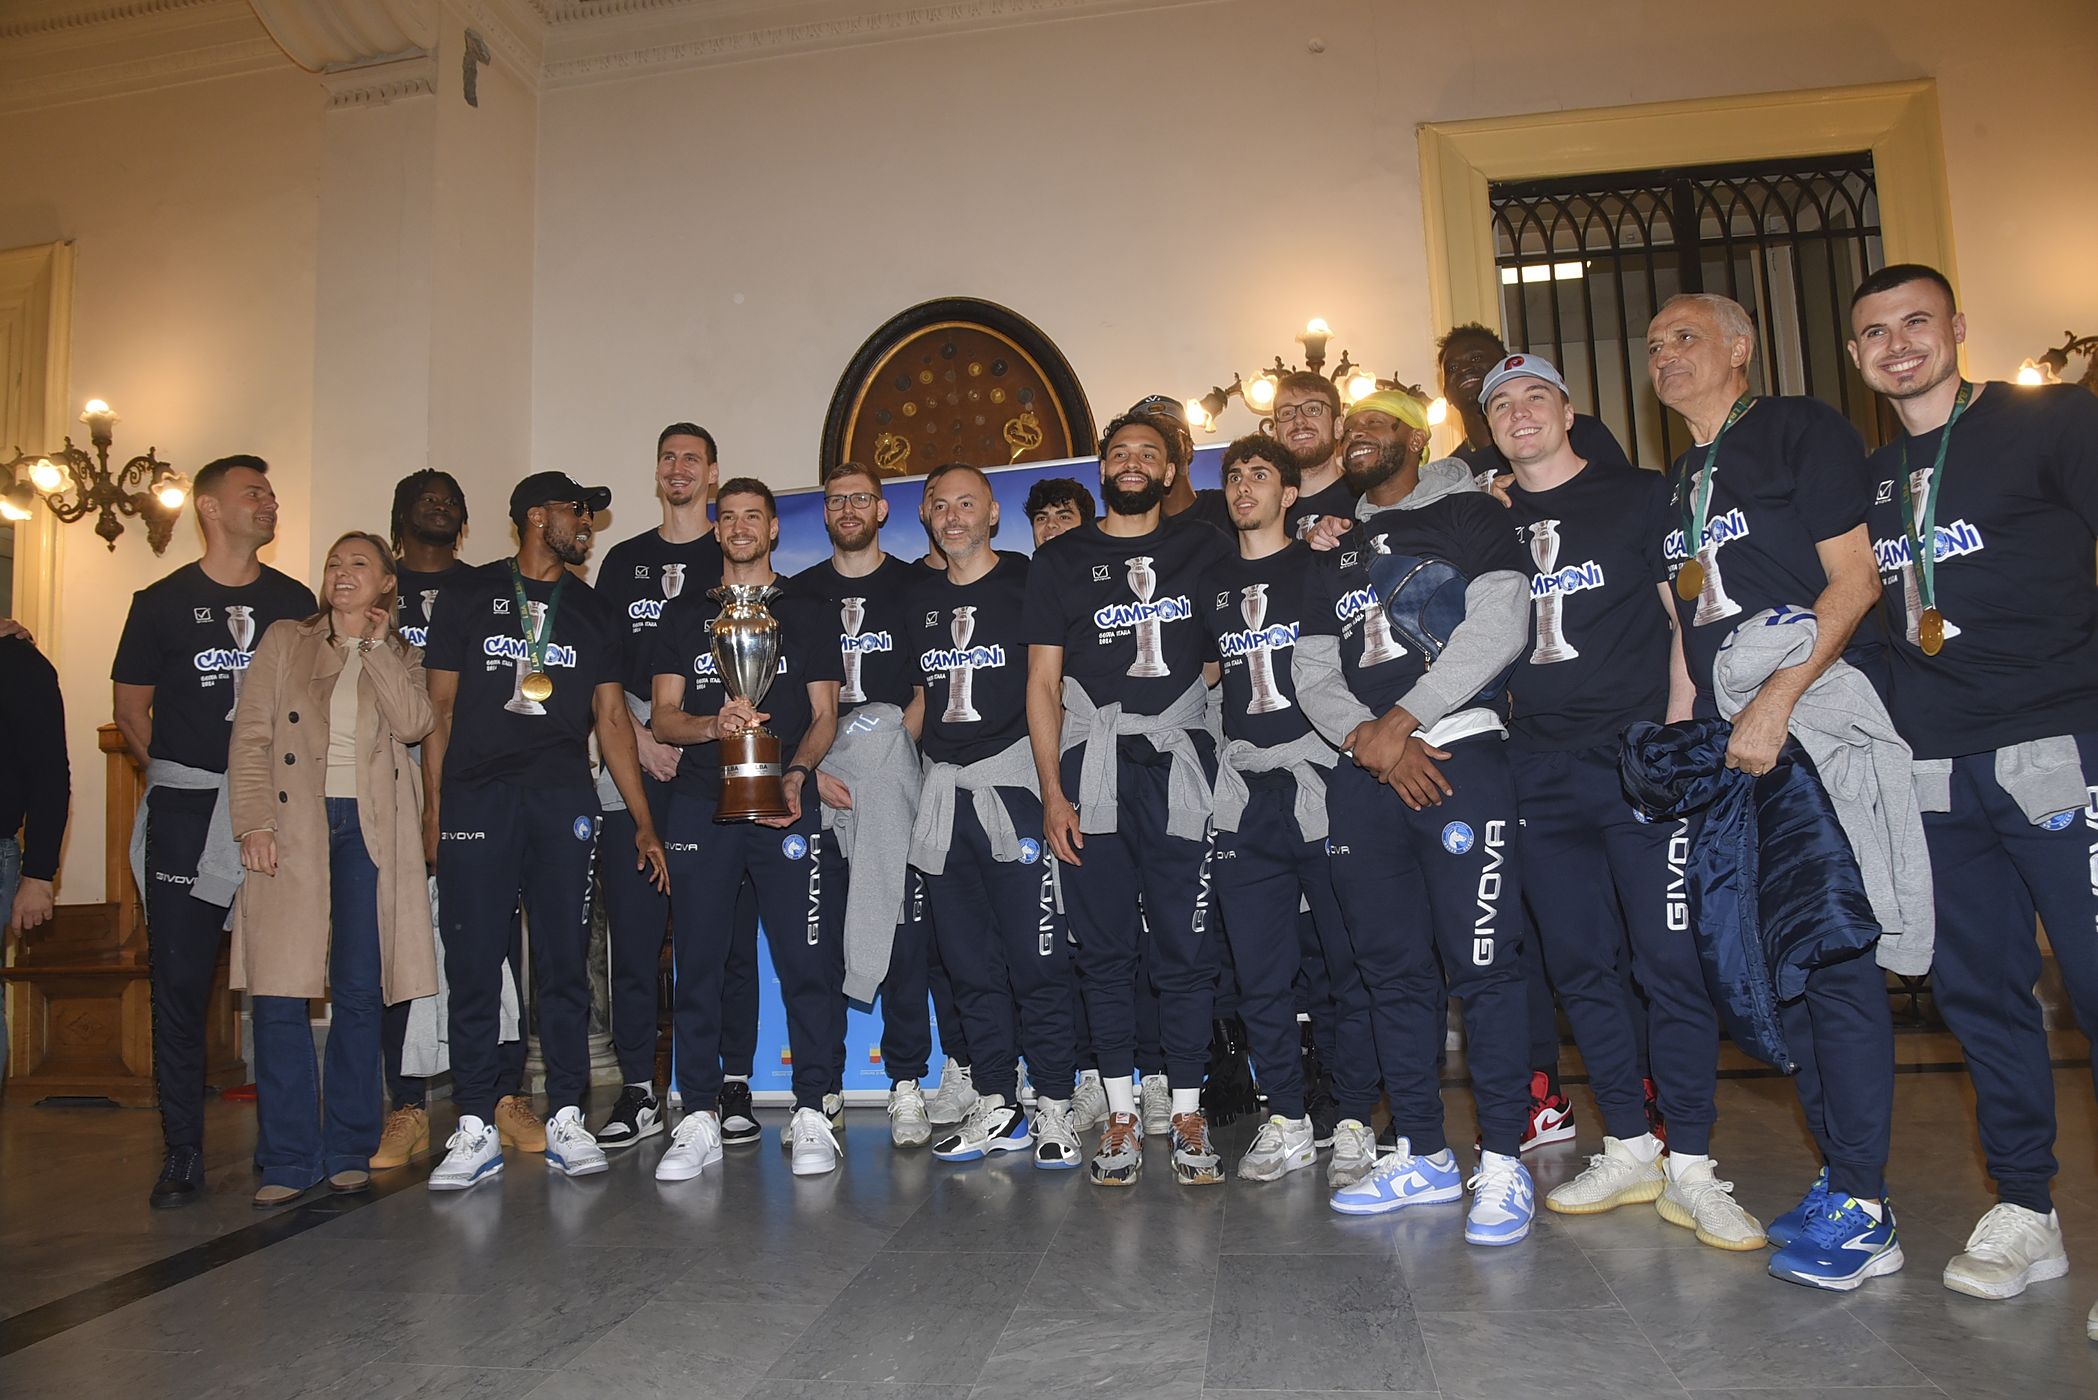 Napoli - Premiazione a Palazzo San Giacomo per giocatori e staff della Gevi Napoli Basket vincitore della Coppa Italia